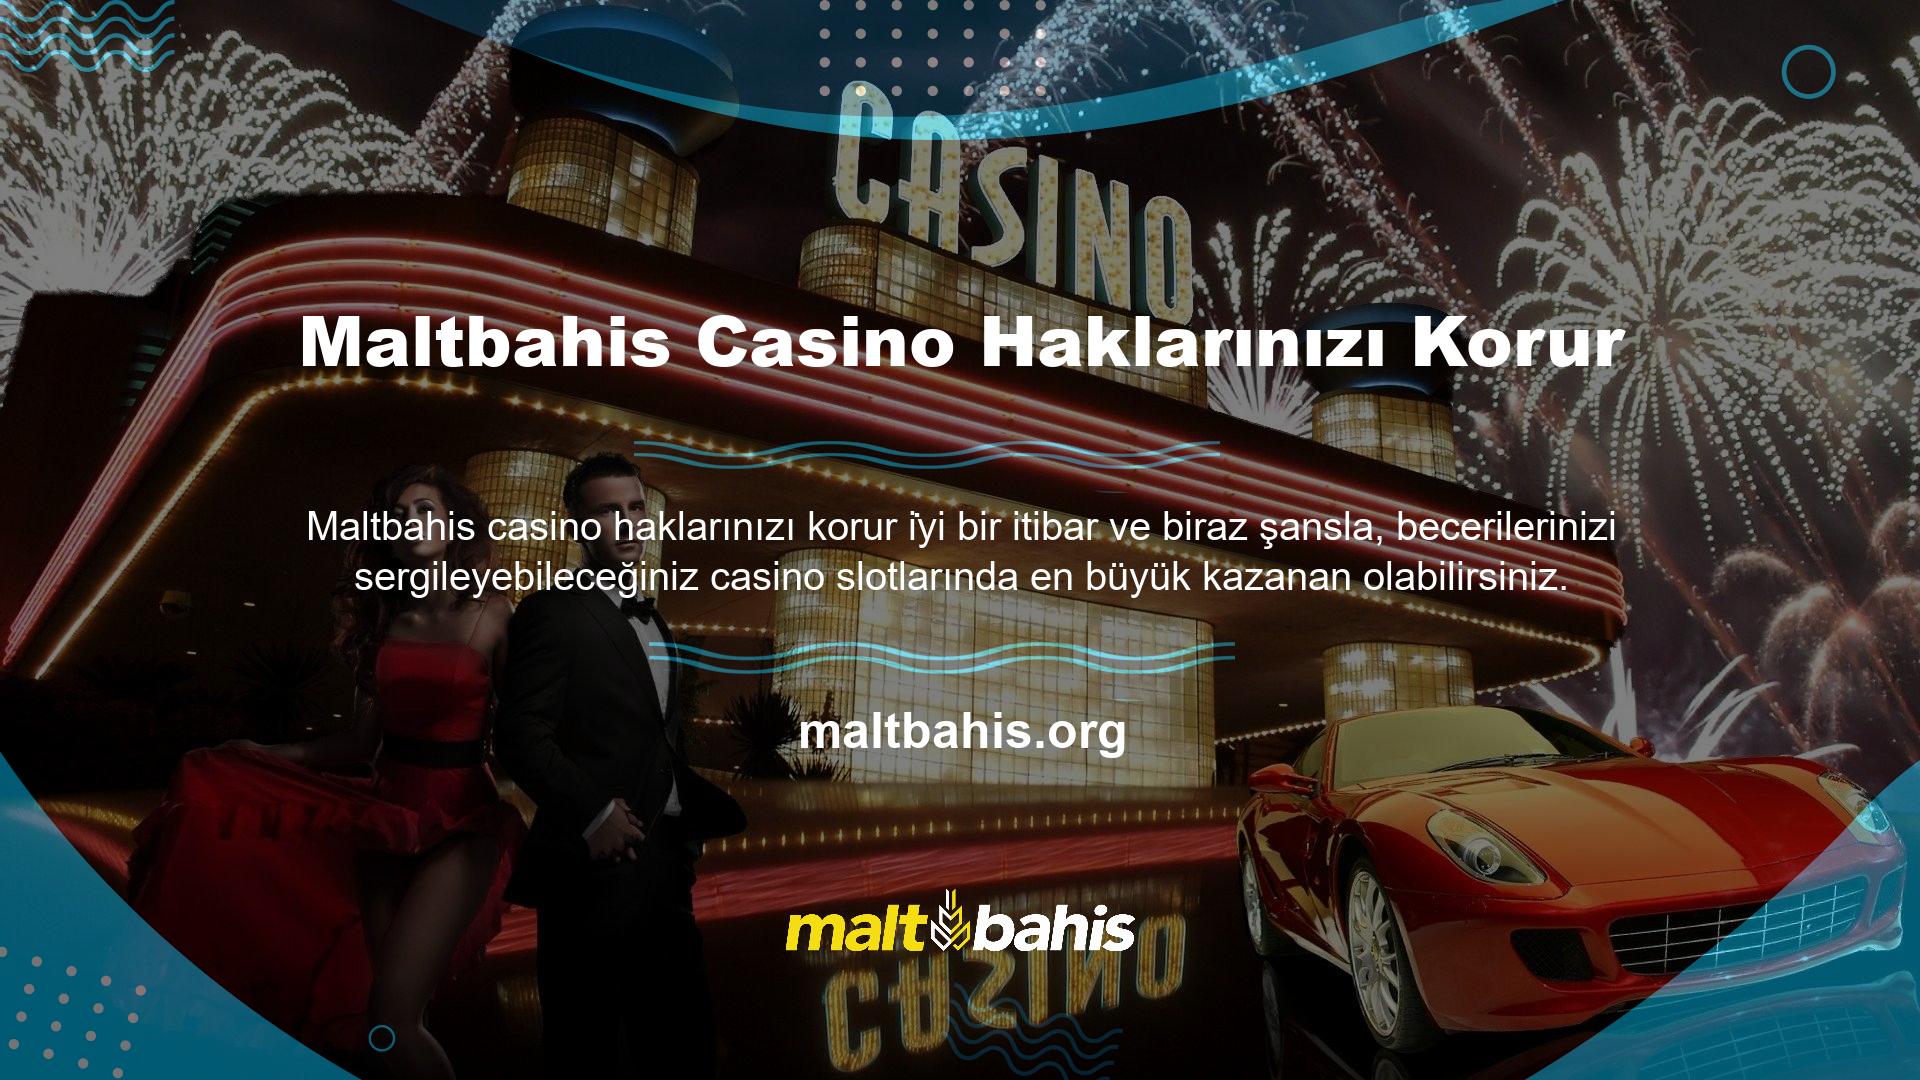 Maltbahis Casino haklarınızı korur, bahis oranlarına olan ilgiyi artırır ve milyonlarca mutlu üyeyi mutlu eder